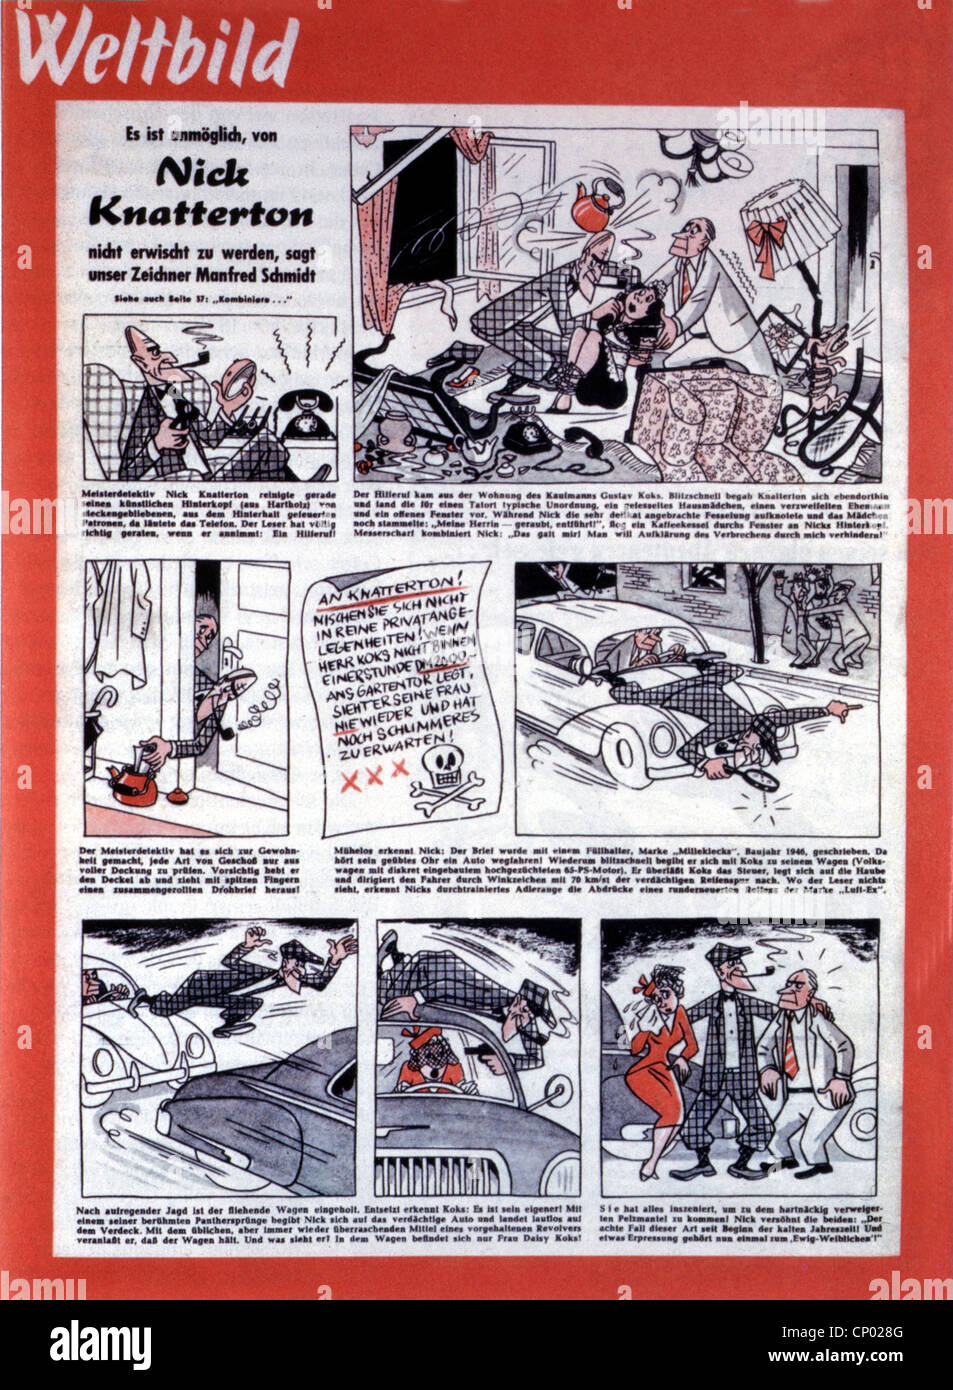 Literatur, Comic 'Nick Knatterton' von Manfred Schmidt, Kurzgeschichte, erschienen in 'Weltbild' Nr. 24/1951, Additional-Rights-Clearences-not available Stockfoto